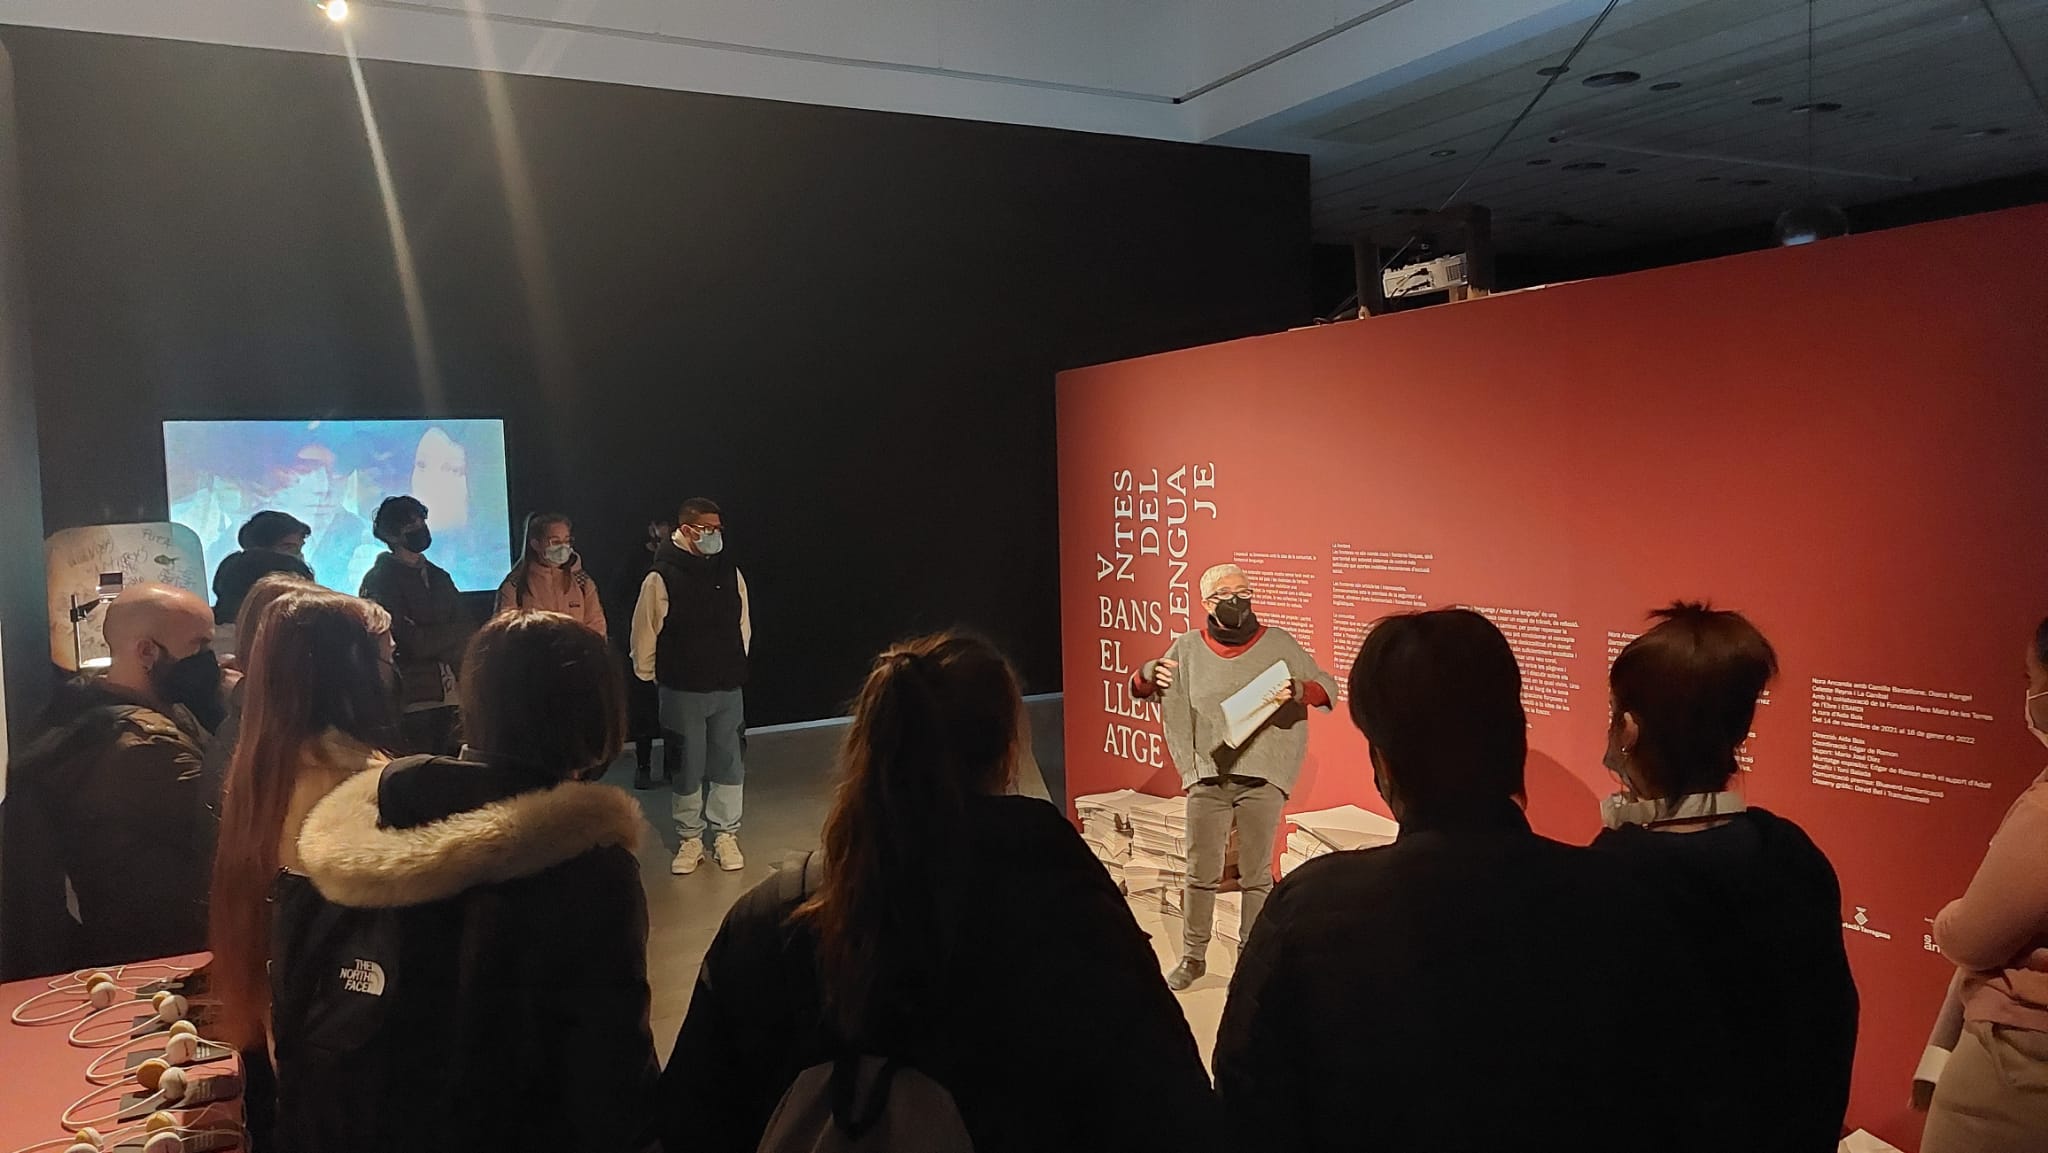 Visitem l'exposició "Abans del llenguatge" al centre d'art Lo Pati